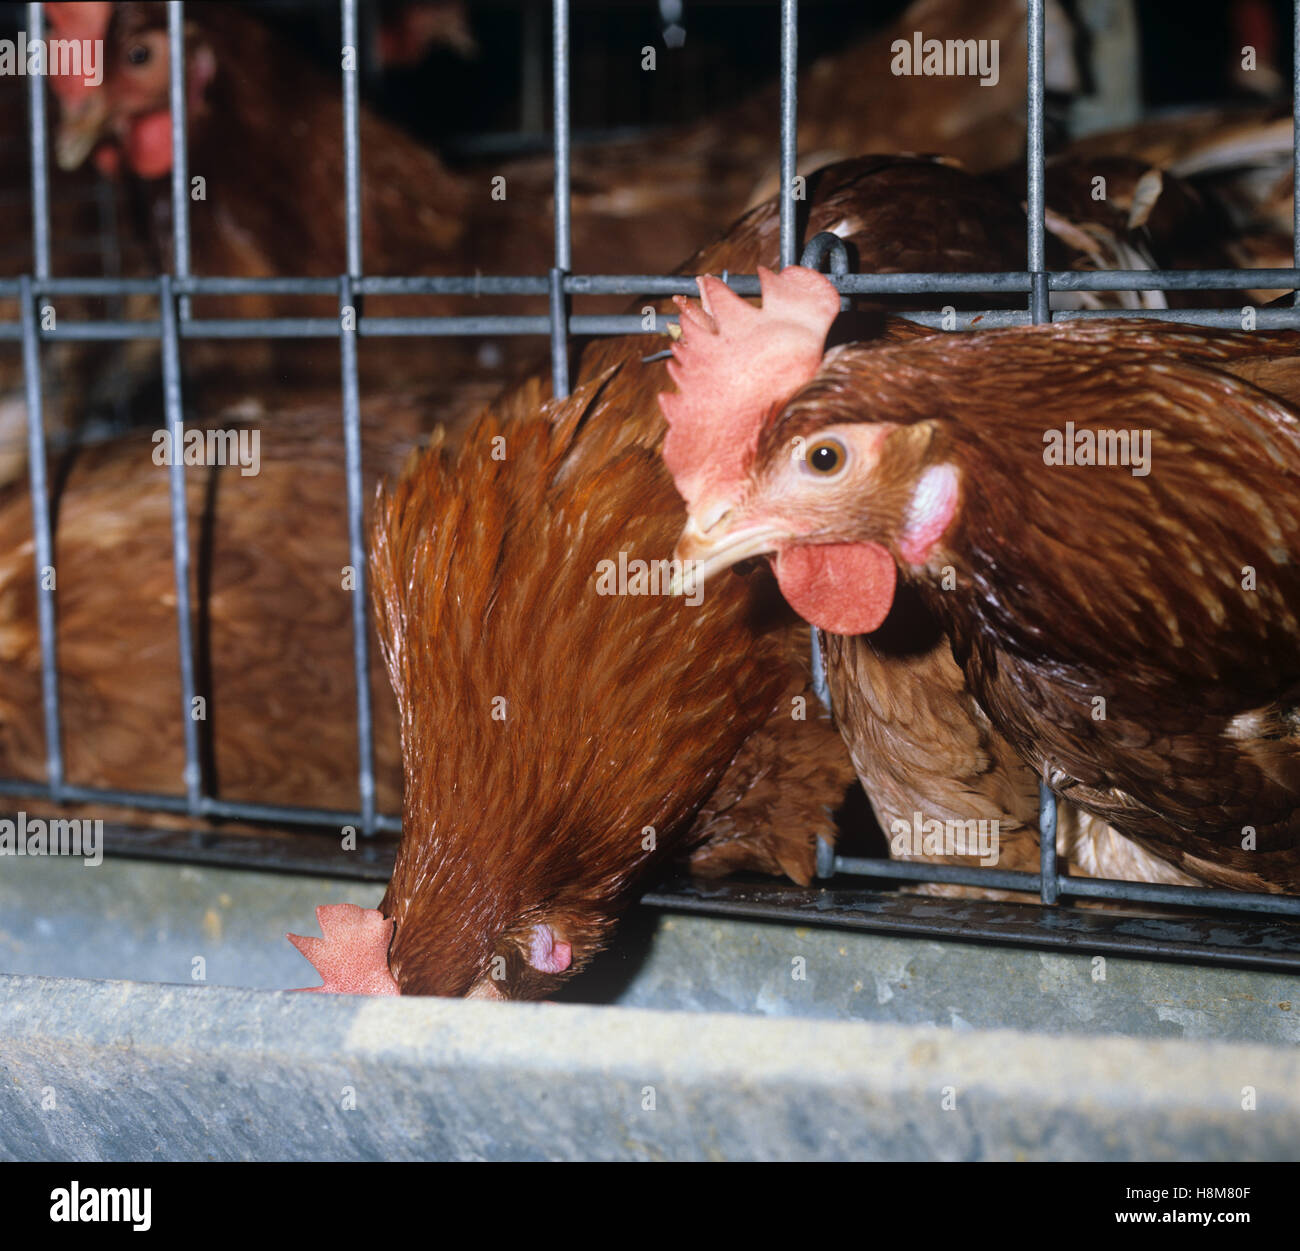 Caged brown warren uovo batteria galline ovaiole e mangiatoia Foto Stock